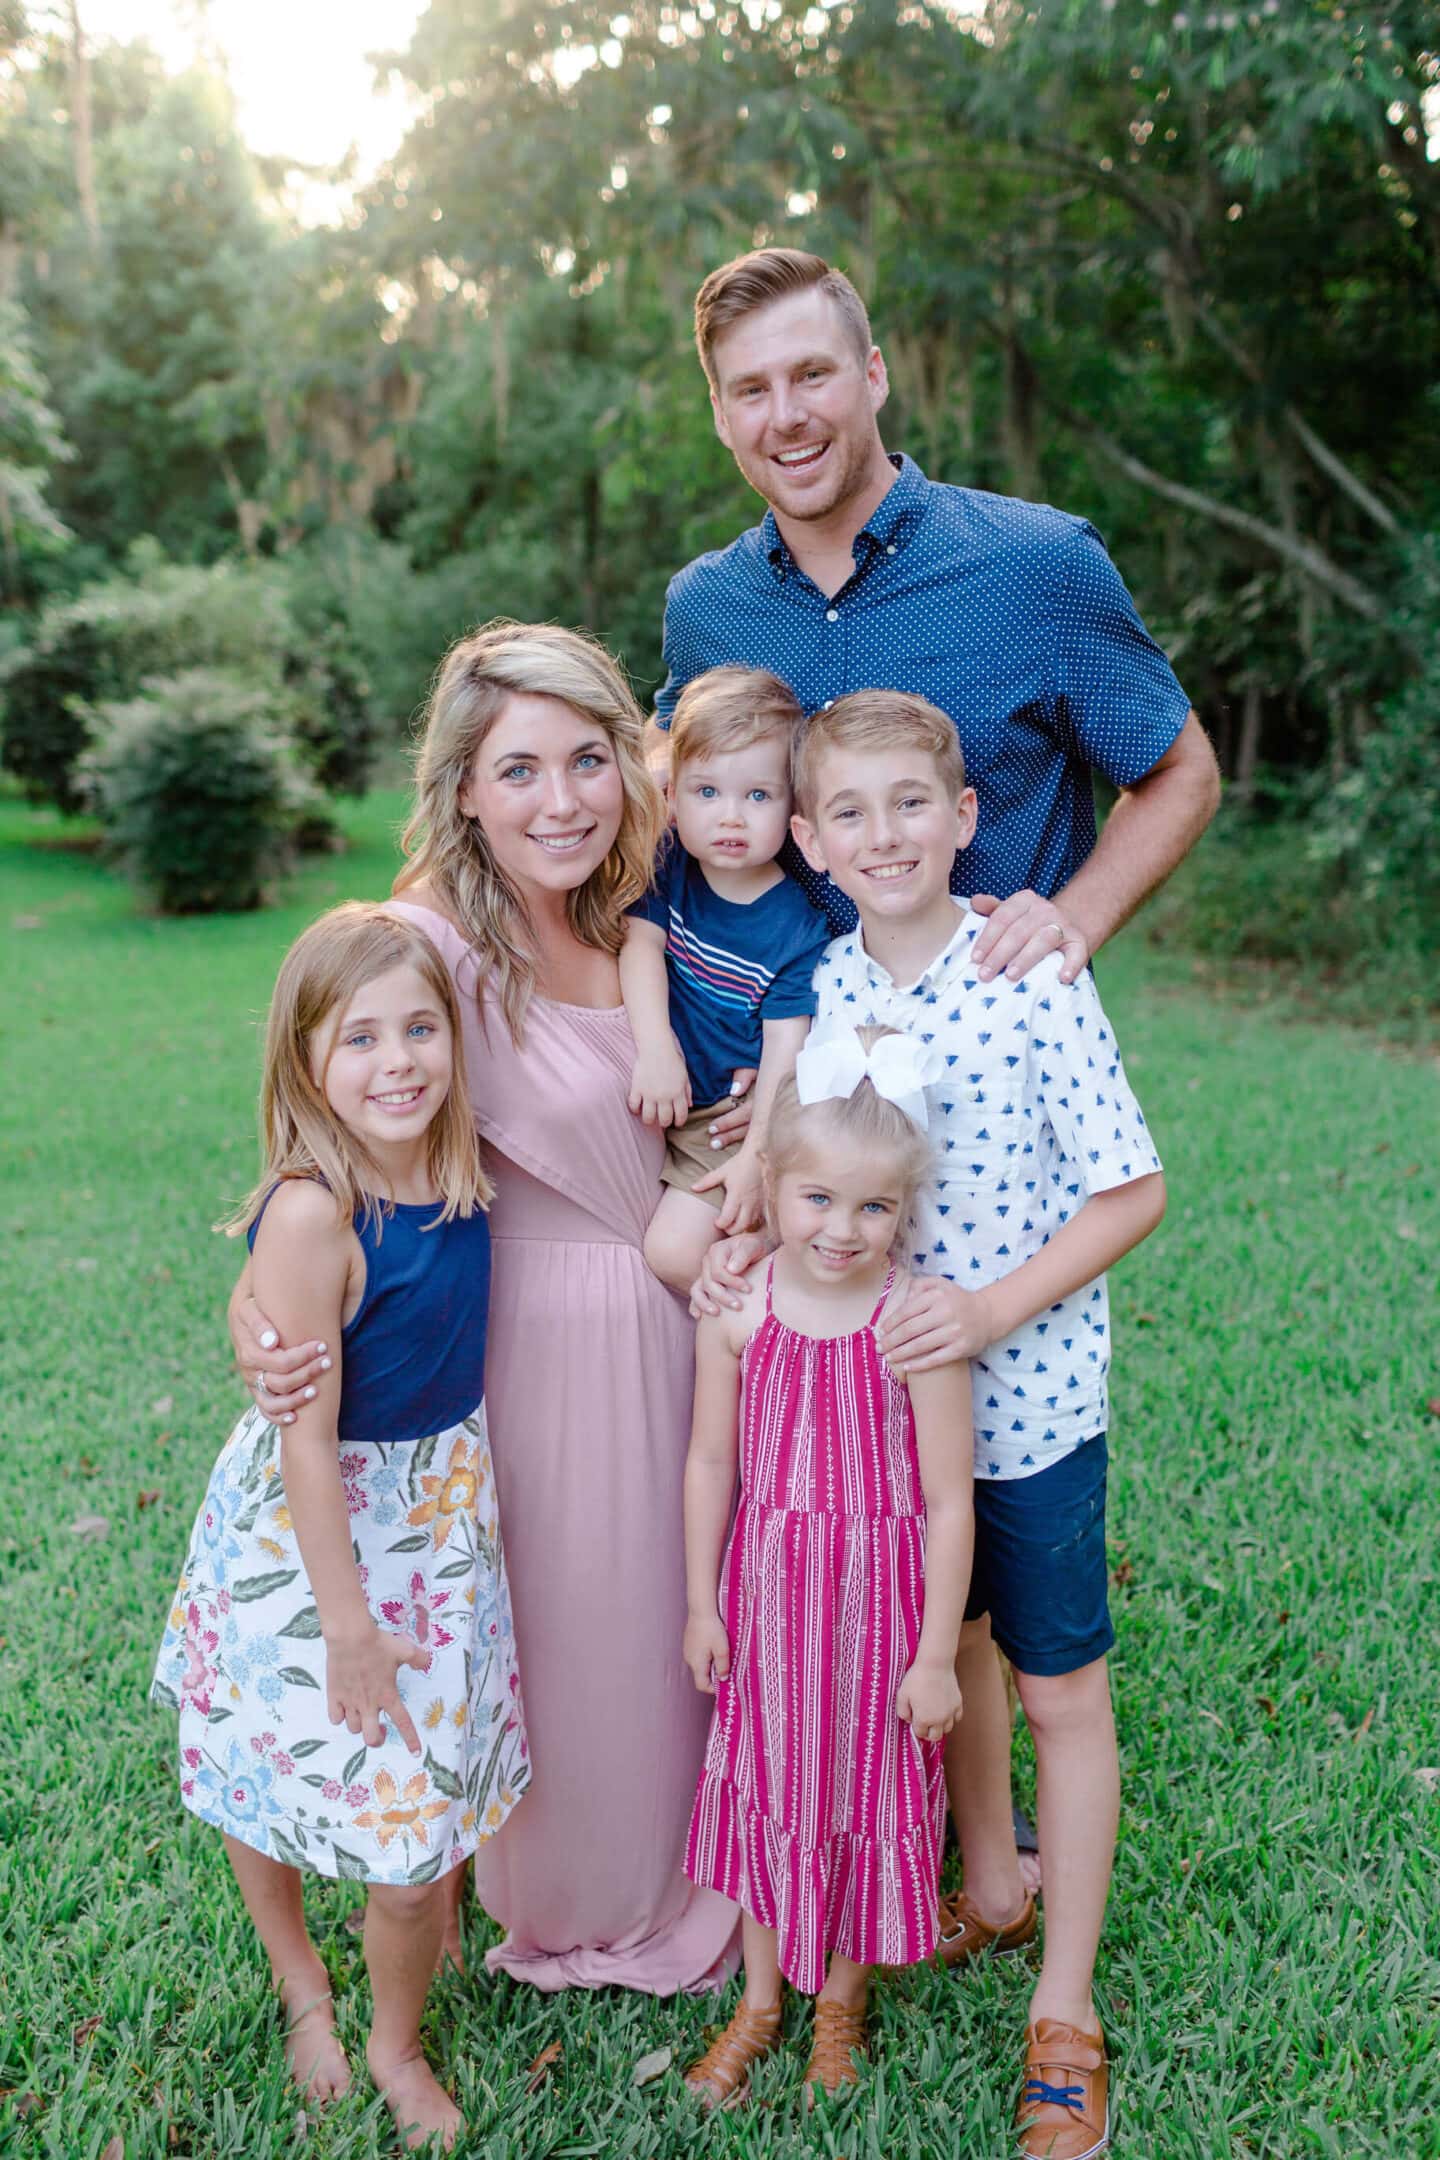 Family Photos June 2020 – Family